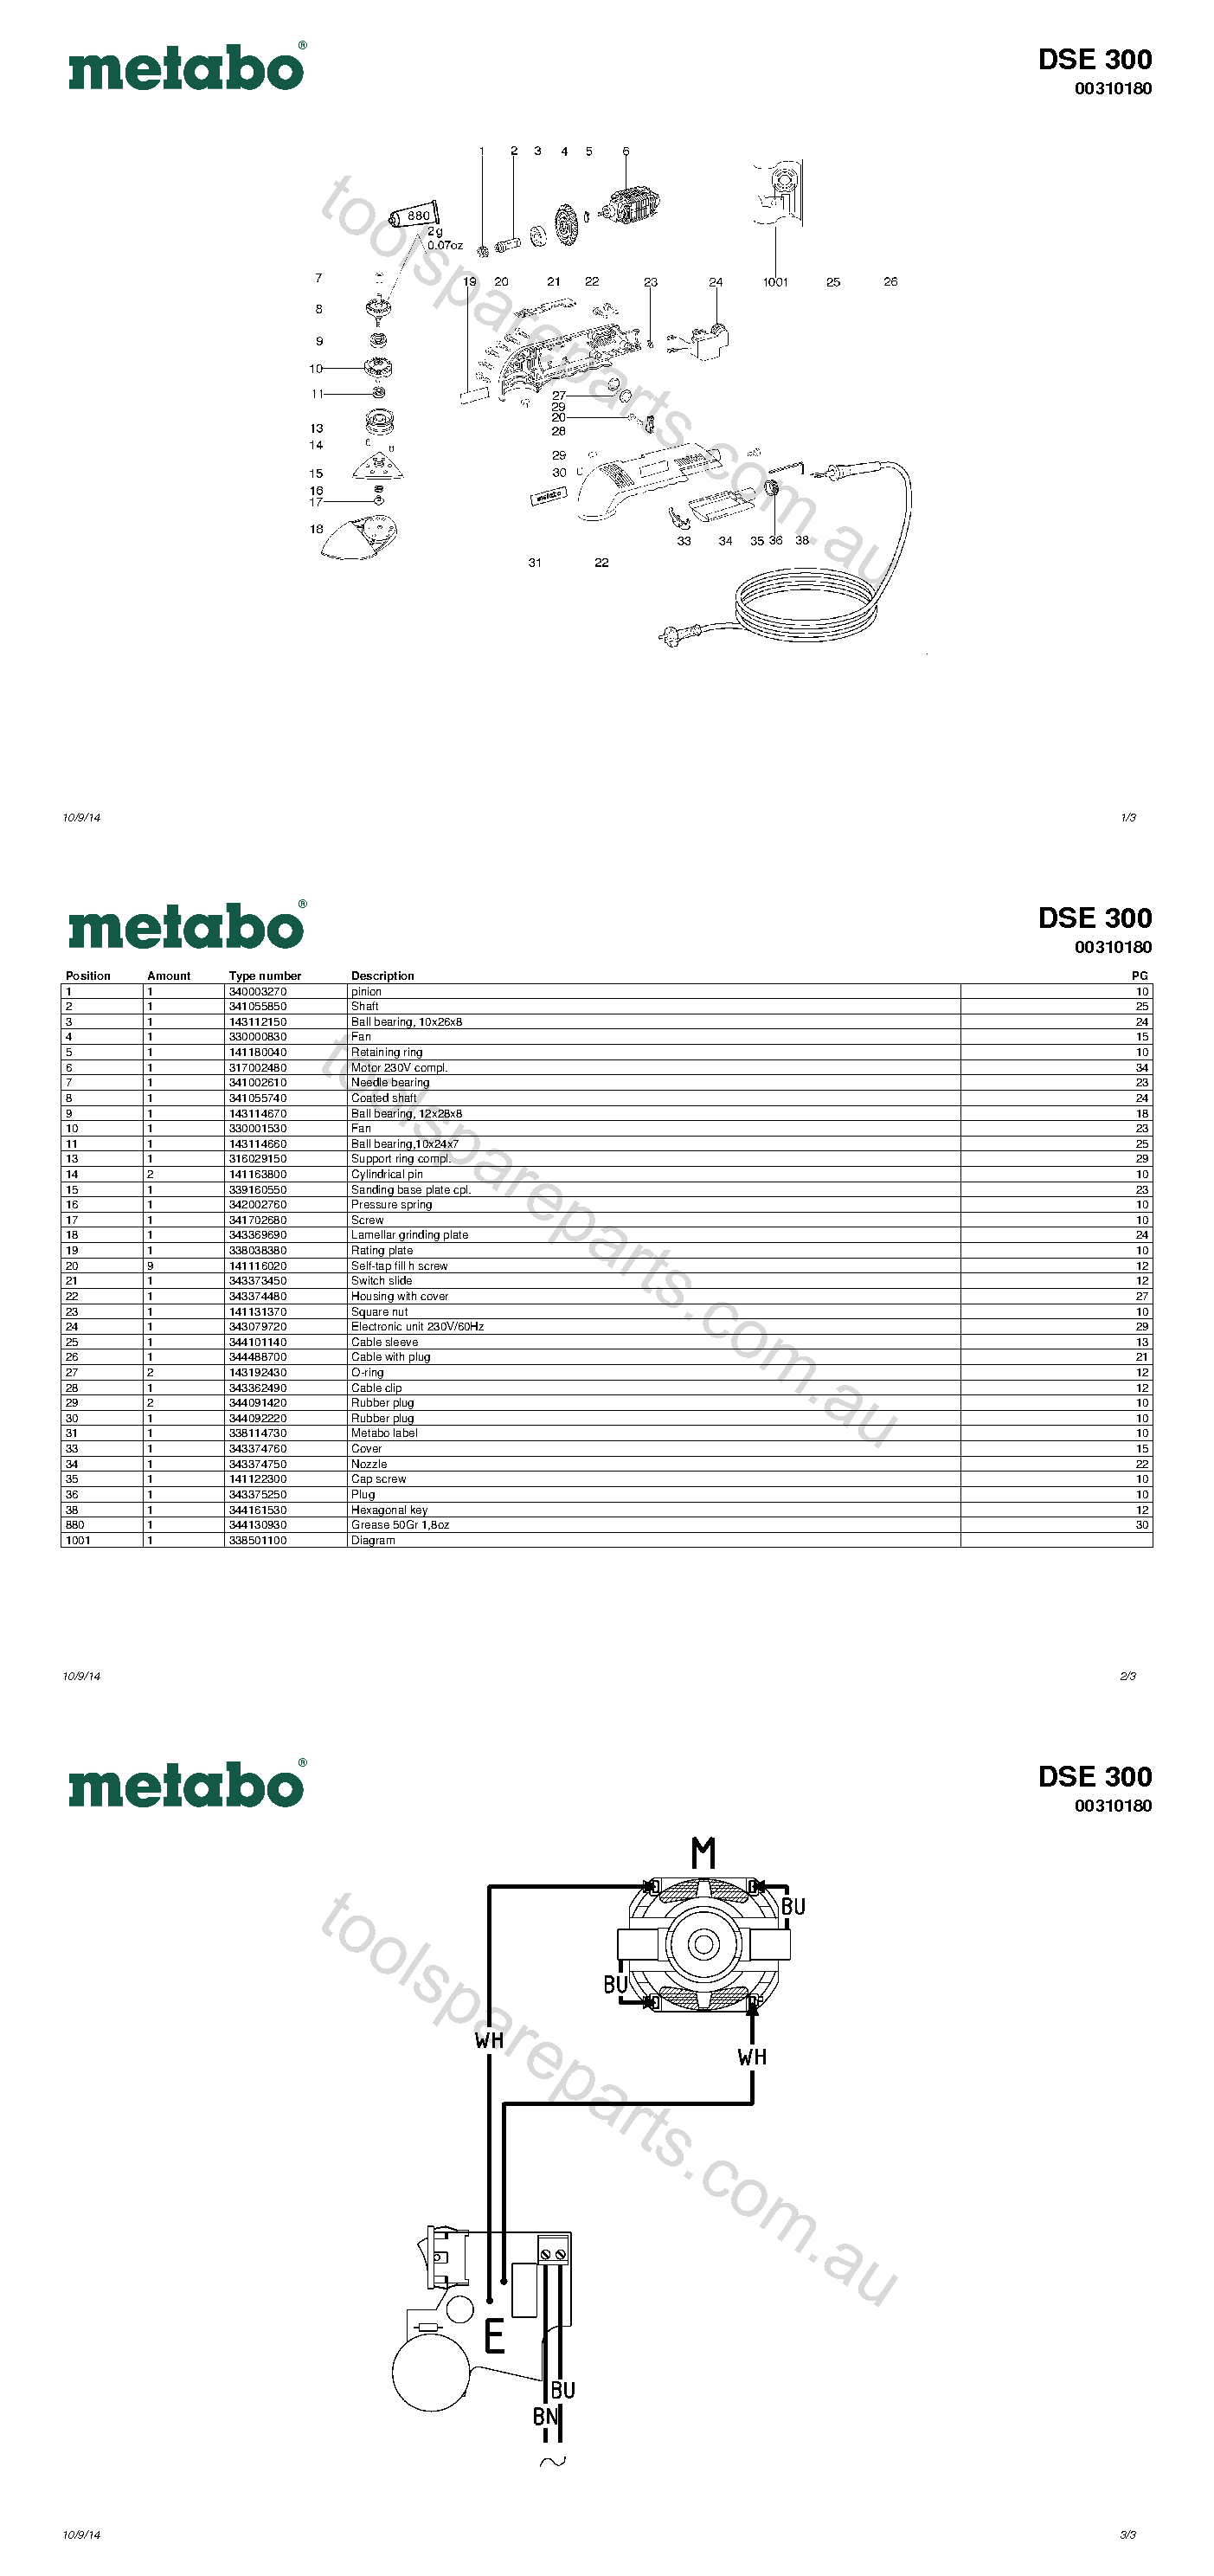 Metabo DSE 300 00310180  Diagram 1